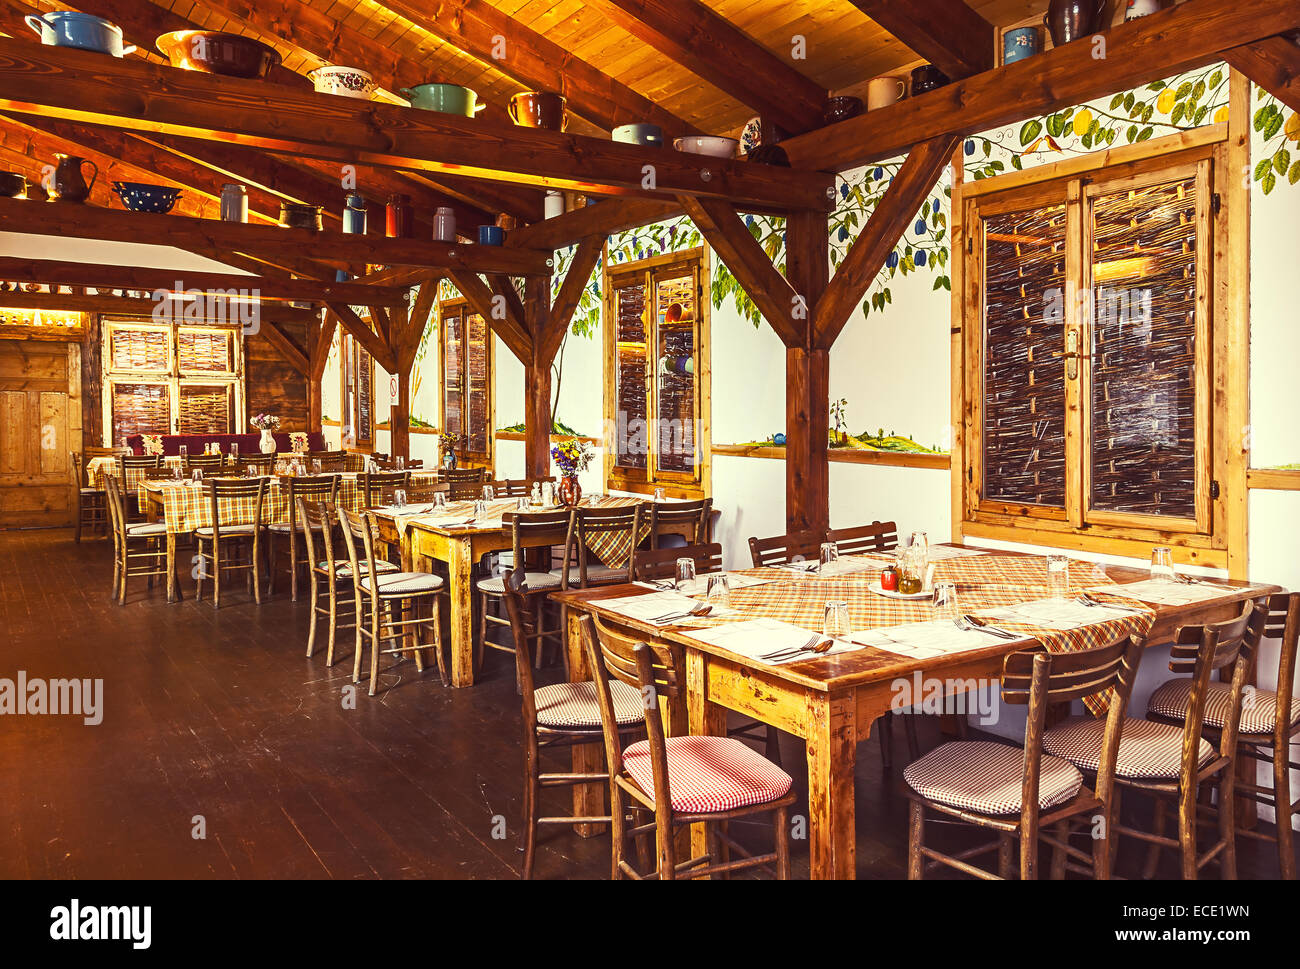 Praga, República Checa - Octubre 20, 2014: restaurante serbio en el corazón de Praga, diseño interior tradicional, con nombre Biogurmania - Je Foto de stock